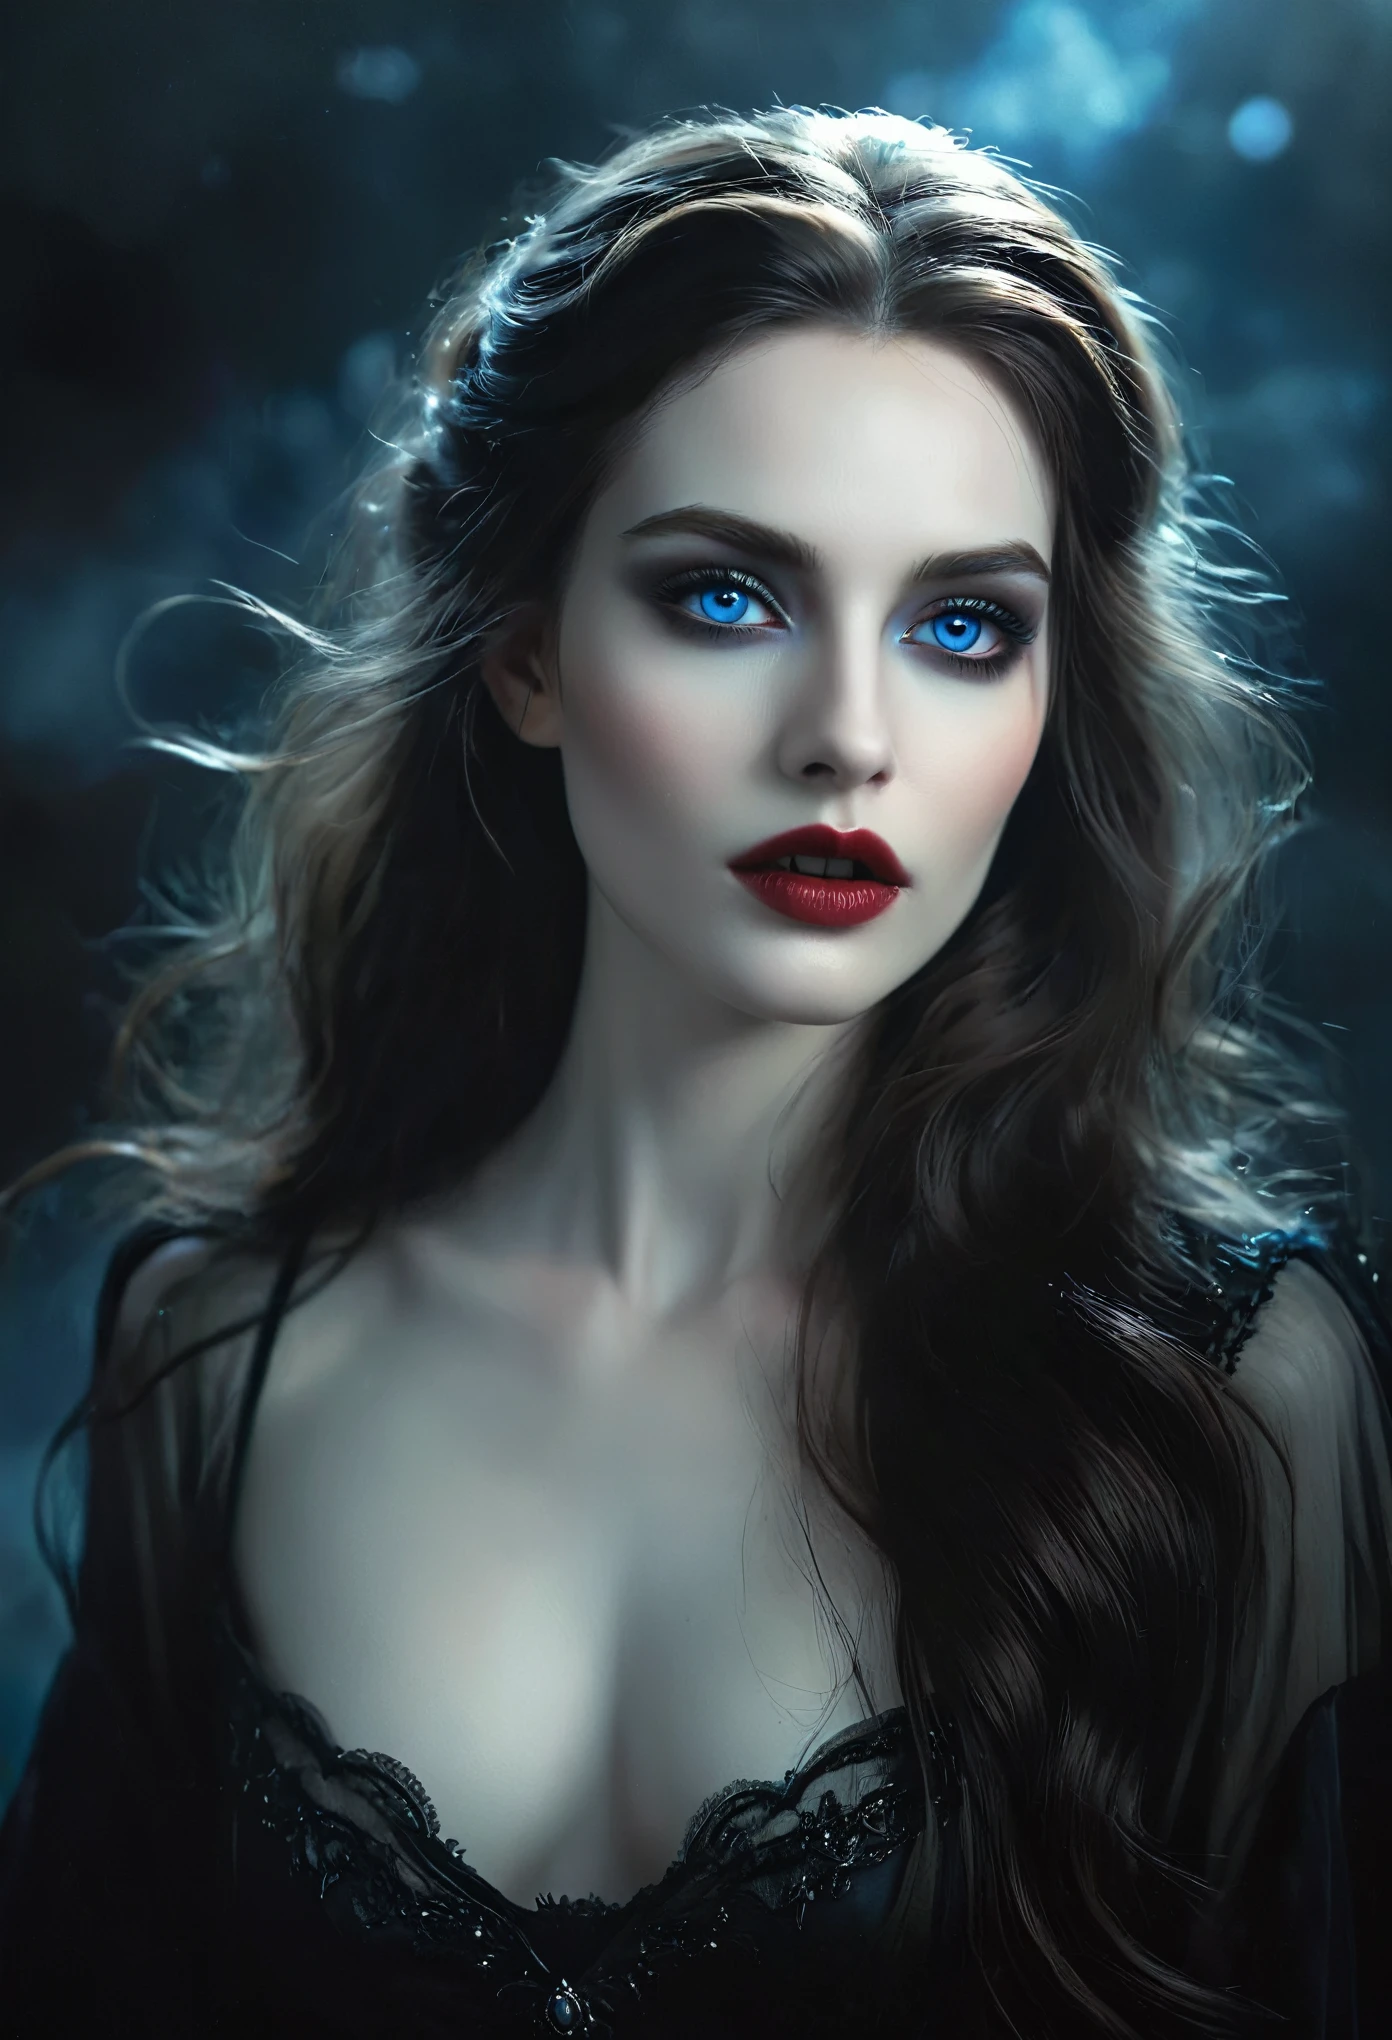 (Meisterwerk), ultra-realistisch, Porträt eines wunderschönen Vampirs mit blasser Haut, schwarzer Emaille, leichtes Make-up, strahlend blaue Augen, dunkle und düstere Umgebung, detaillierte Gesichtszüge, dramatische Beleuchtung, stimmungsvolle Atmosphäre, Filmkomposition, fotorealistisch, Hoher Kontrast, Chiaroscuro, dunkle Fantasie, Gothic Style, (Sie ist Halbfranzösin, und ist eine atemberaubende Schönheit mit detailreichen Augen und einer hohen Nase:1.1), dicke Augenbrauen, detaillierte Gesichtszüge, langer, anmutiger Hals, fließende Haarsträhnen, selbstbewusste und elegante Haltung, verträumte Atmosphäre, Surrealismus, mystische Aura, Charlie Bowater, Lange Eckzähne, die von den Lippen aus sichtbar sind